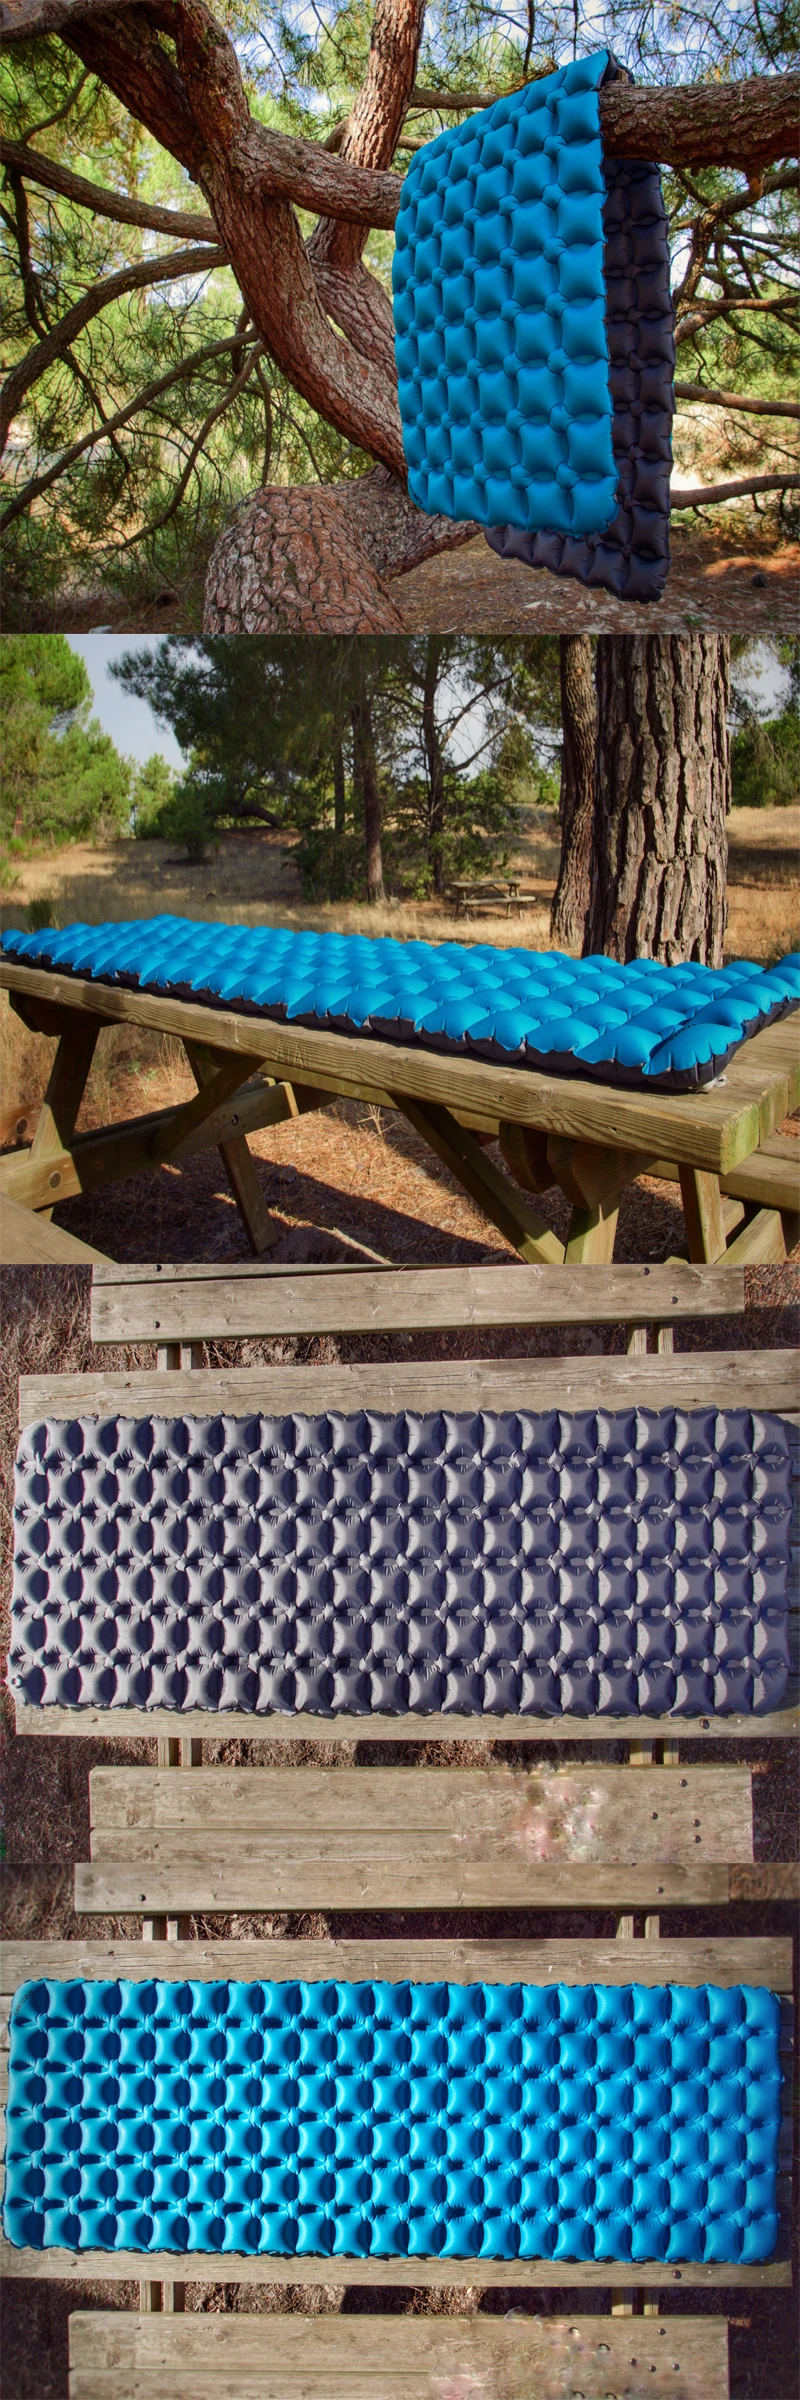 Спальный коврик для кемпинга альпинизма Сверхлегкий компактный воздушный коврик надувной легкий спальный коврик портативный Открытый походный